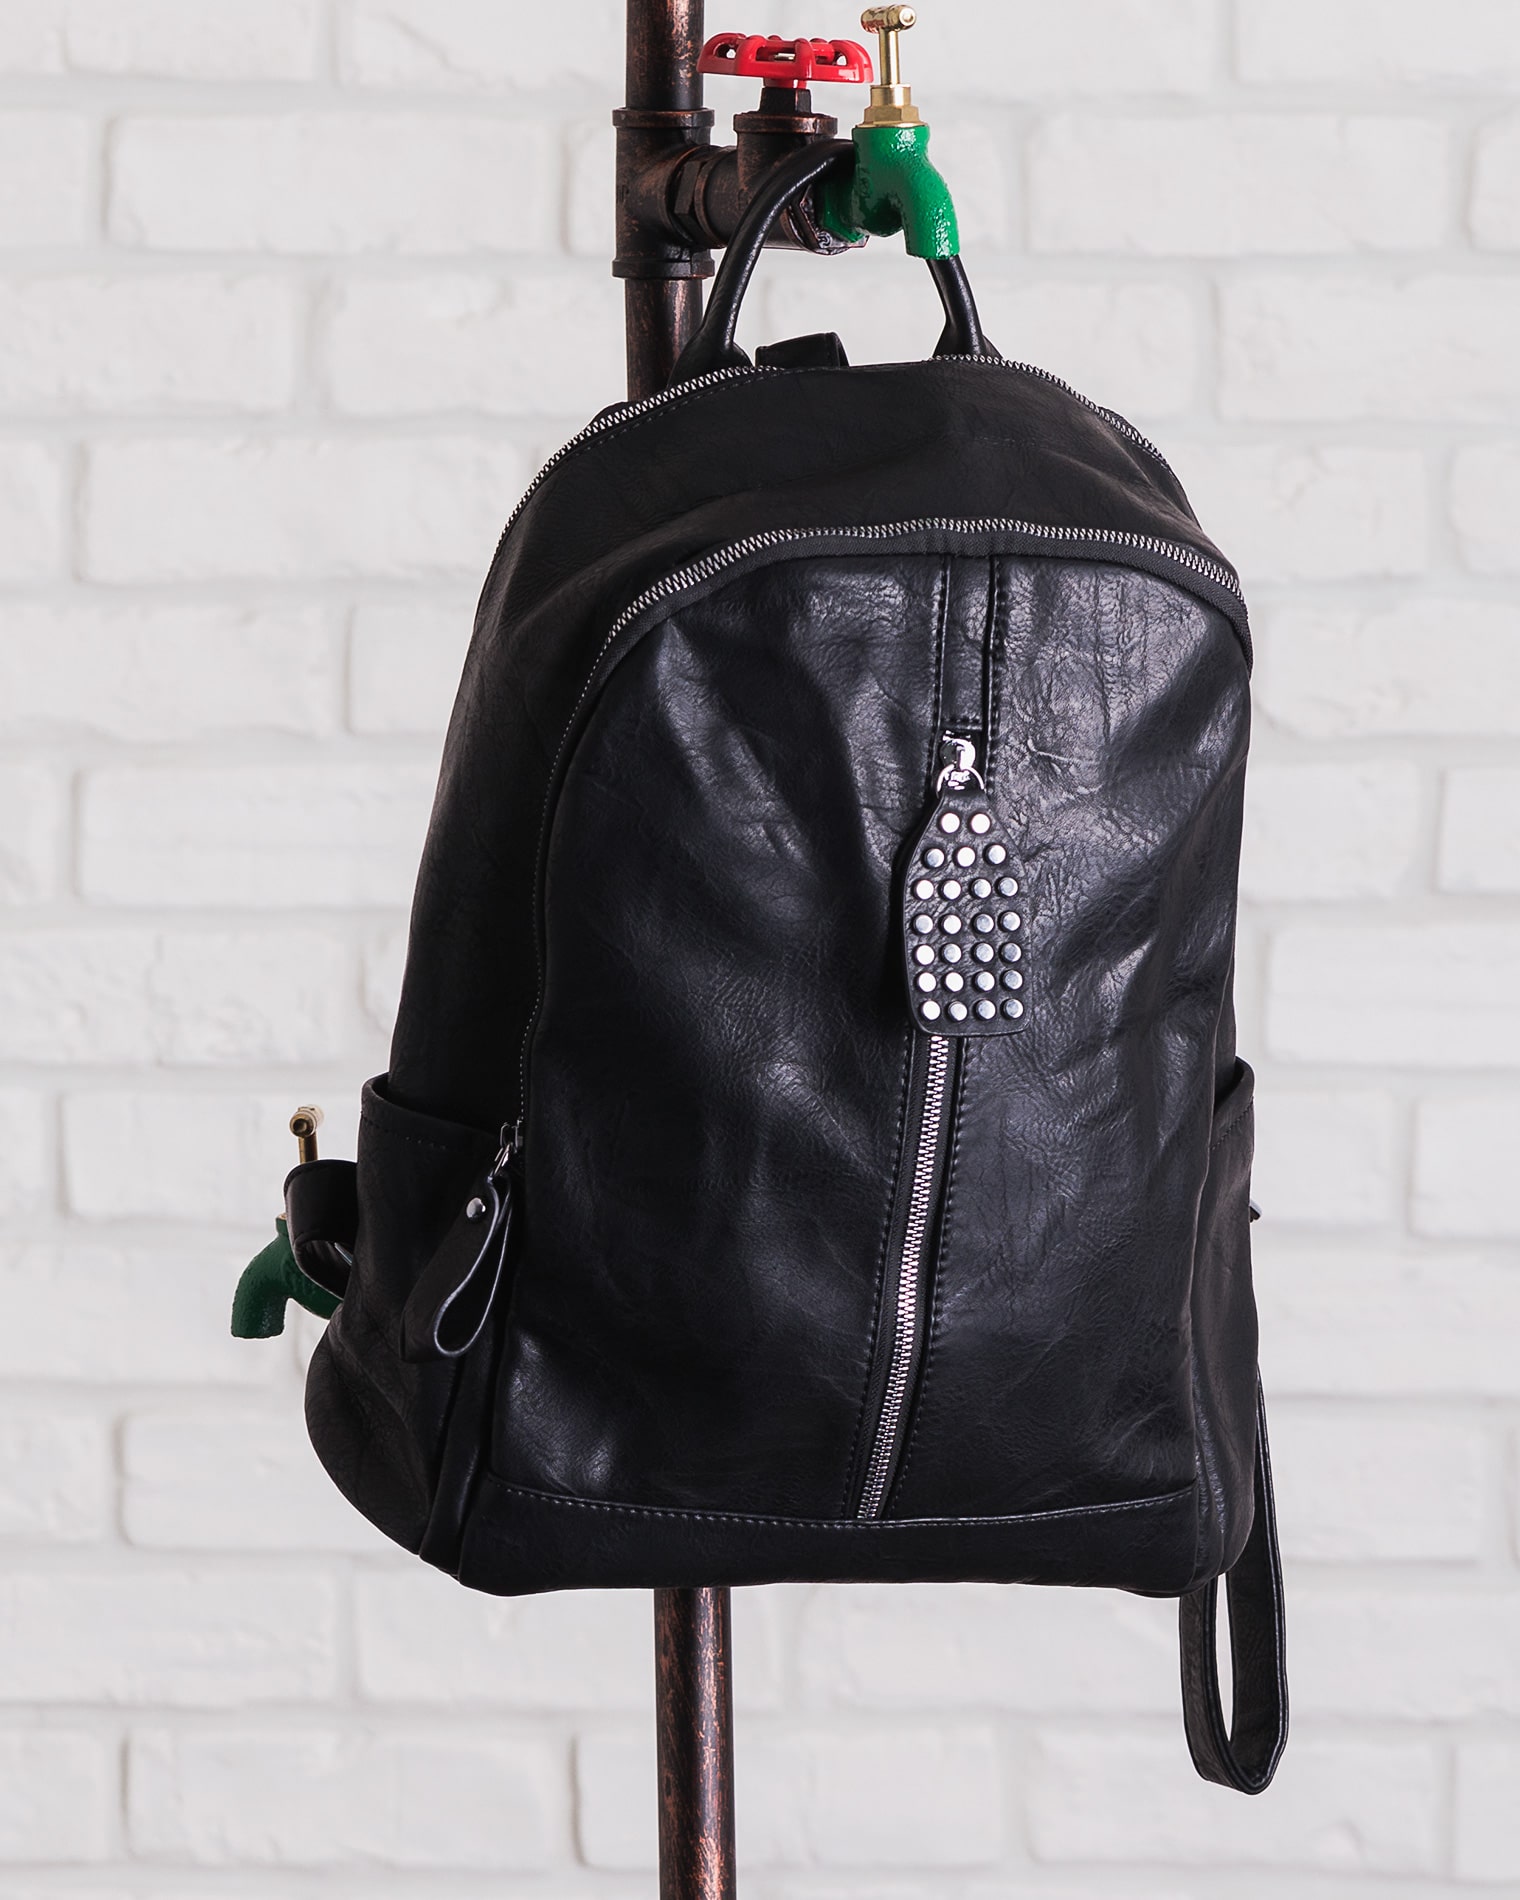 Oxygen Backpack, Black Color